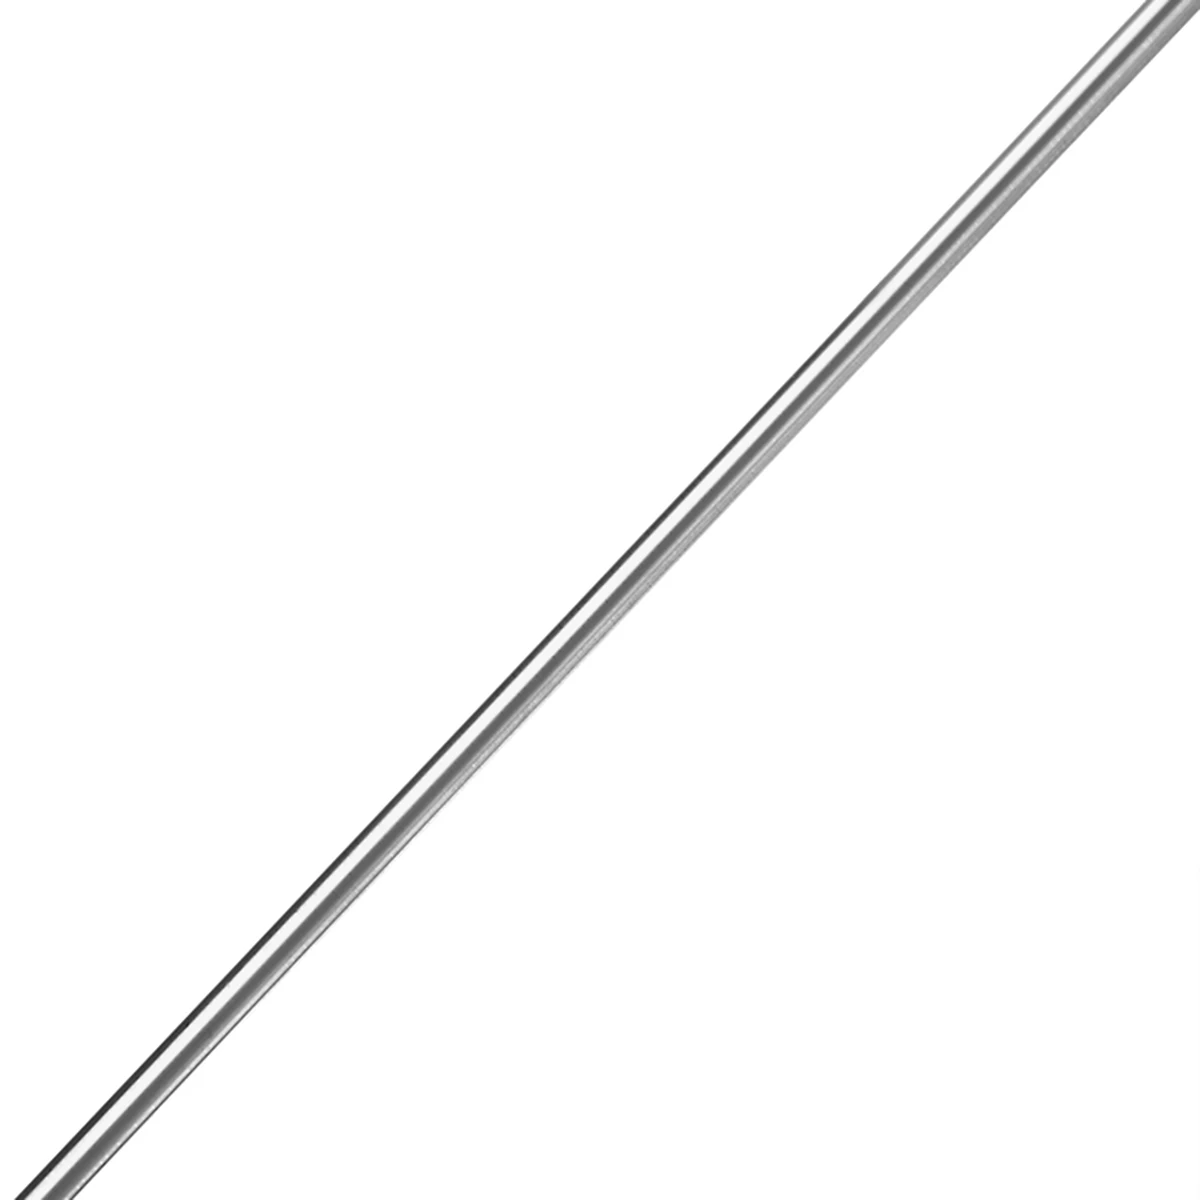 1 шт. класс 5 GR5 титан Ti бар Mayitr металлический стержень палка 50 см x 4 мм для сварочного инструмента